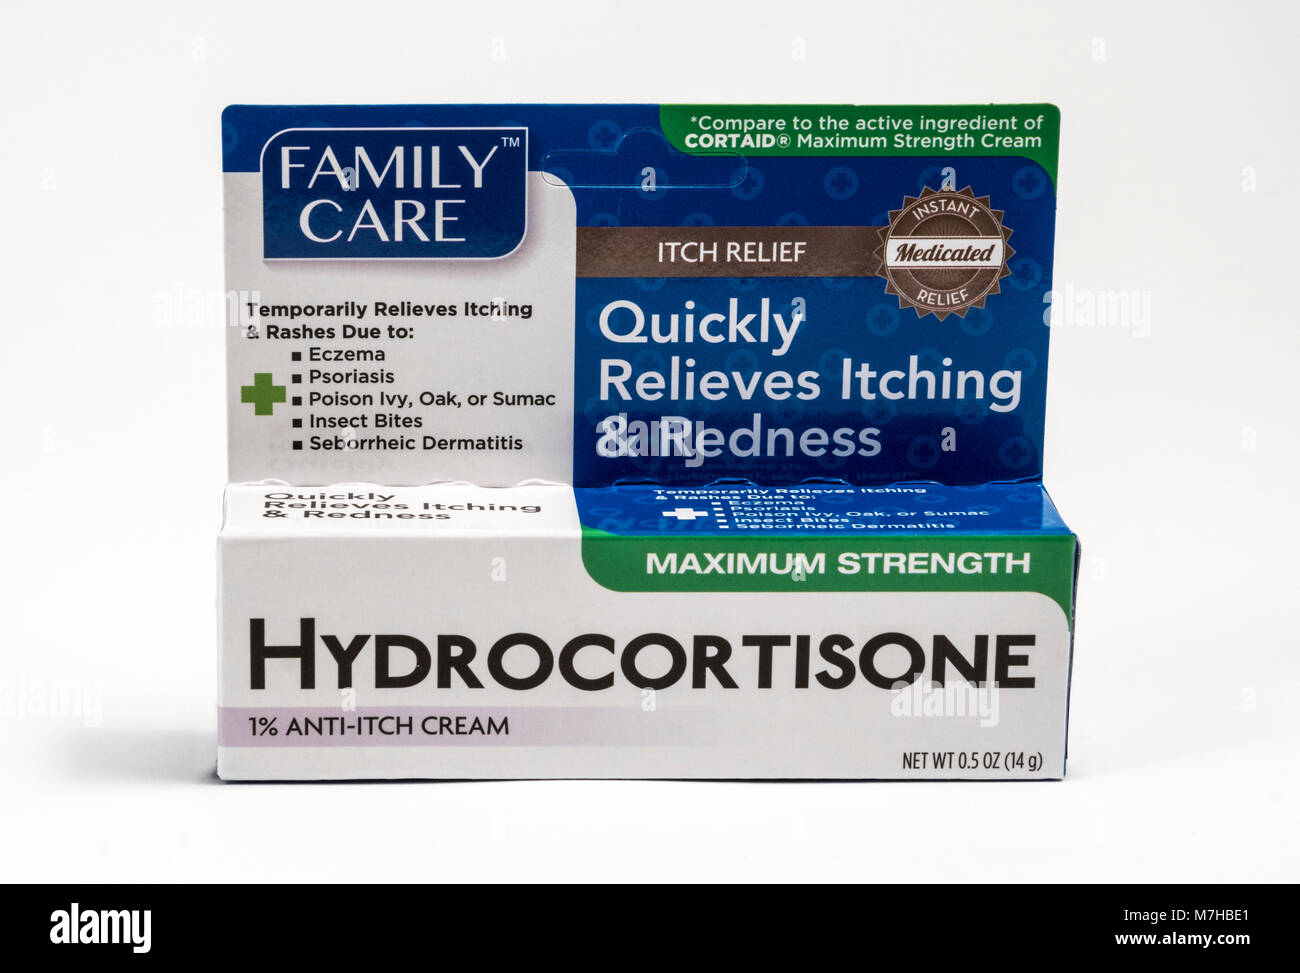 Hydrocortisone cream -Fotos und -Bildmaterial in hoher Auflösung – Alamy